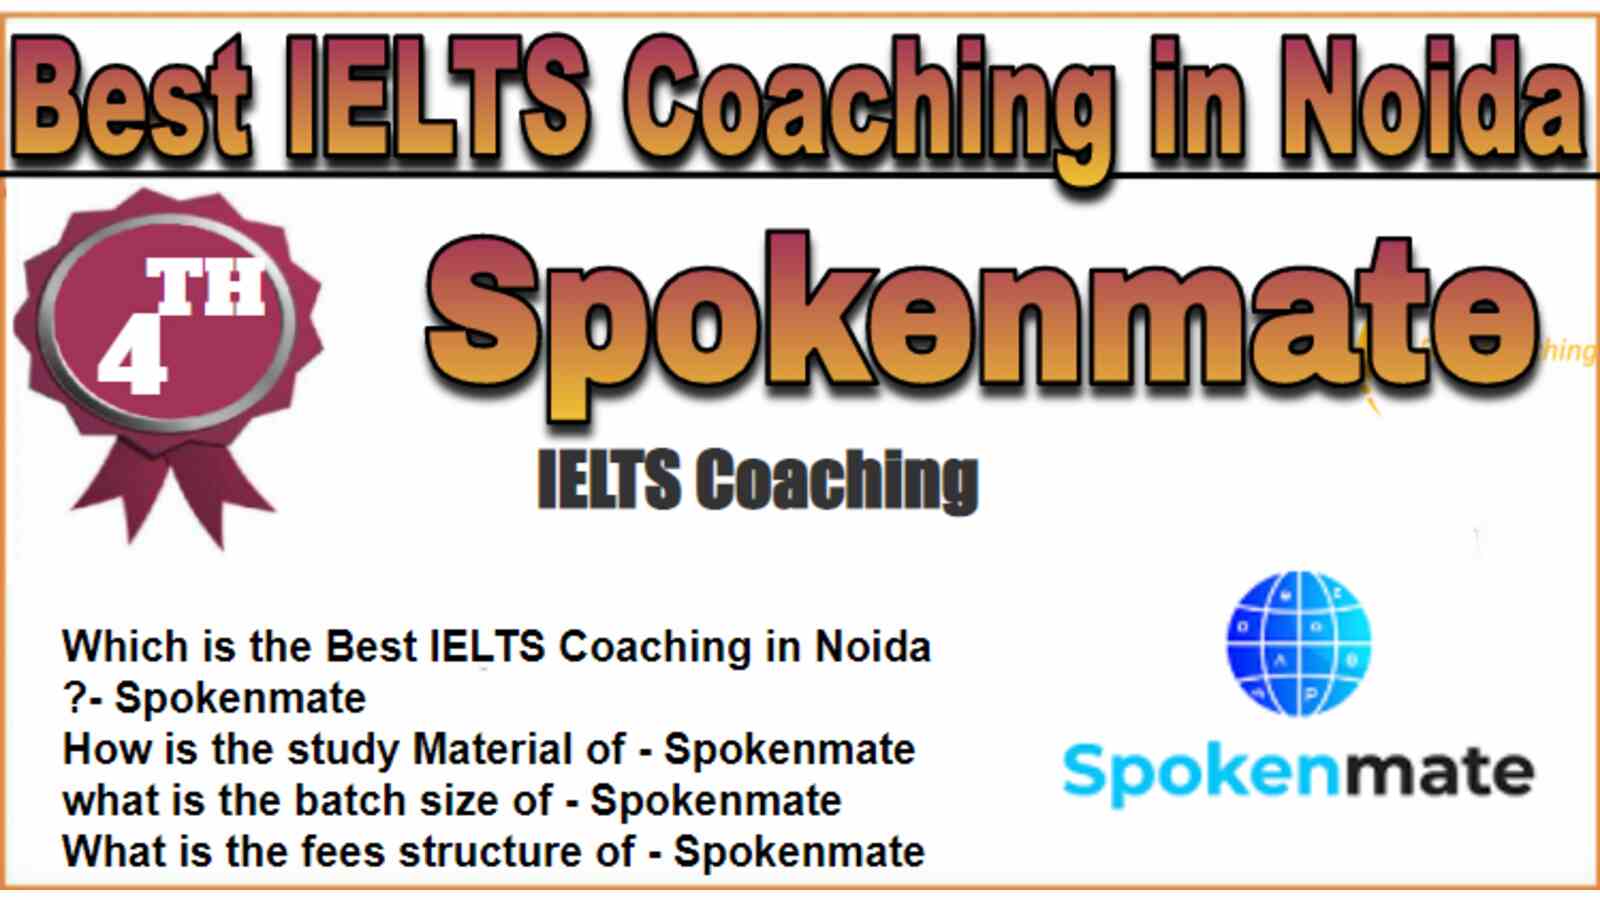 Rank 4 Best IELTS Coaching in Noida